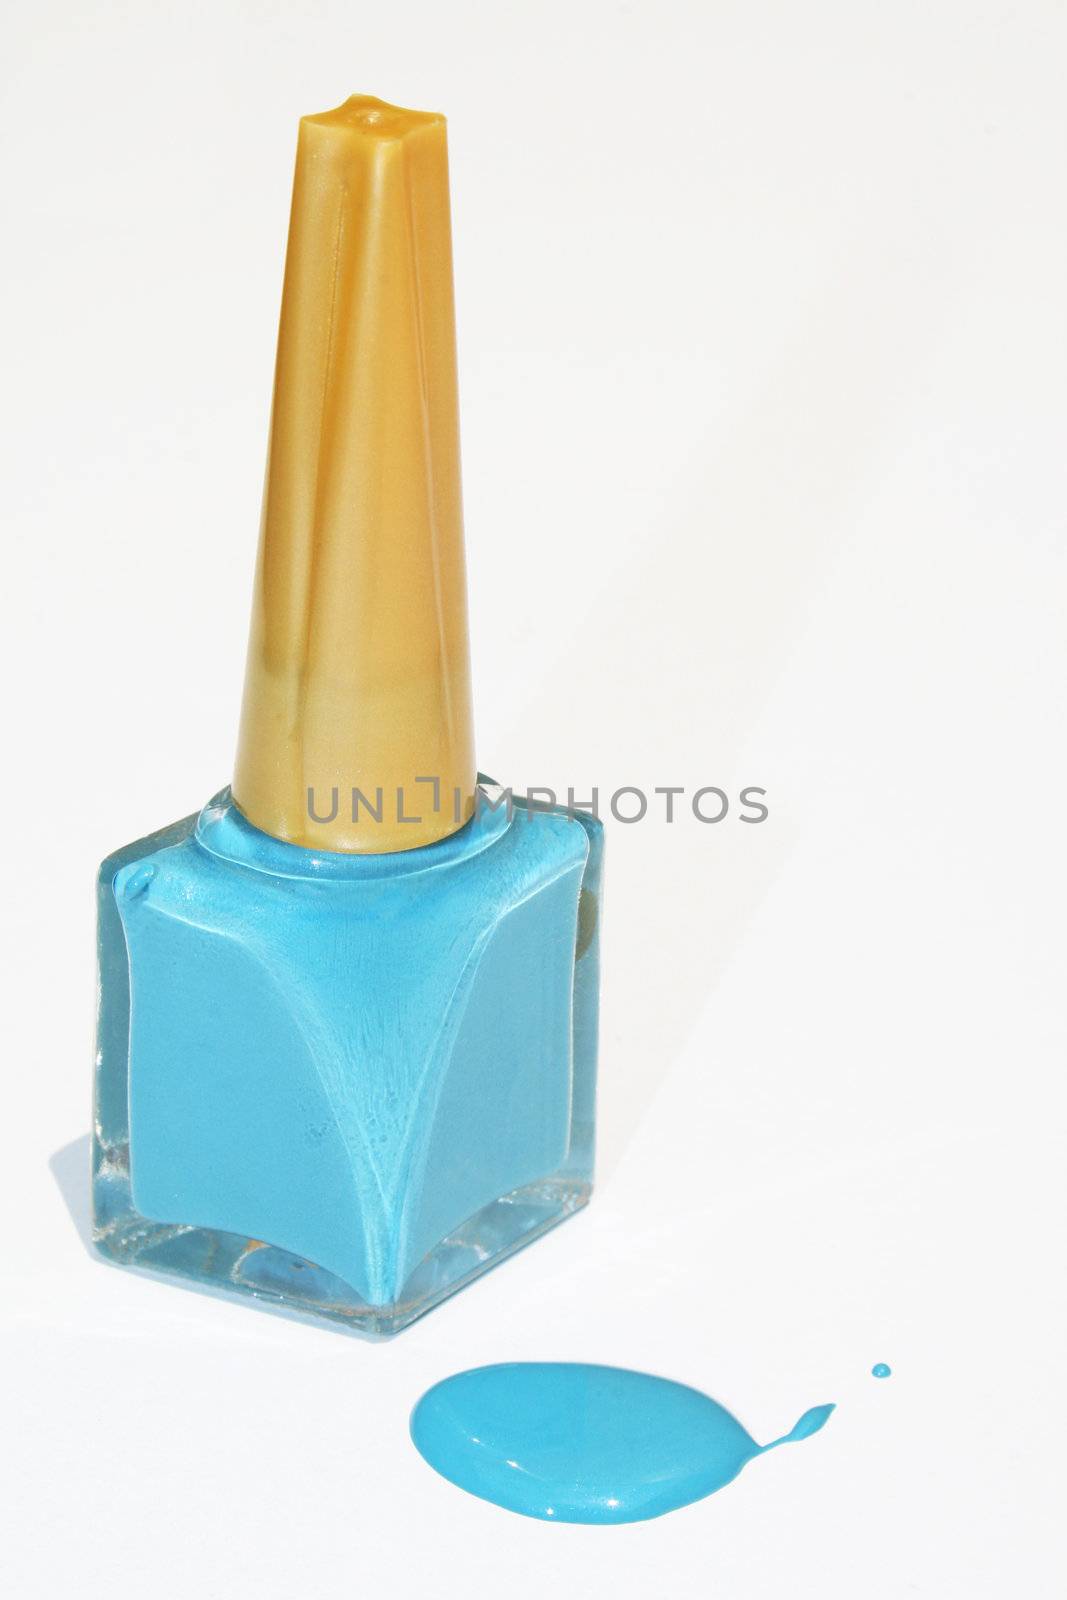 Blue nail polish bottle isolated against white background